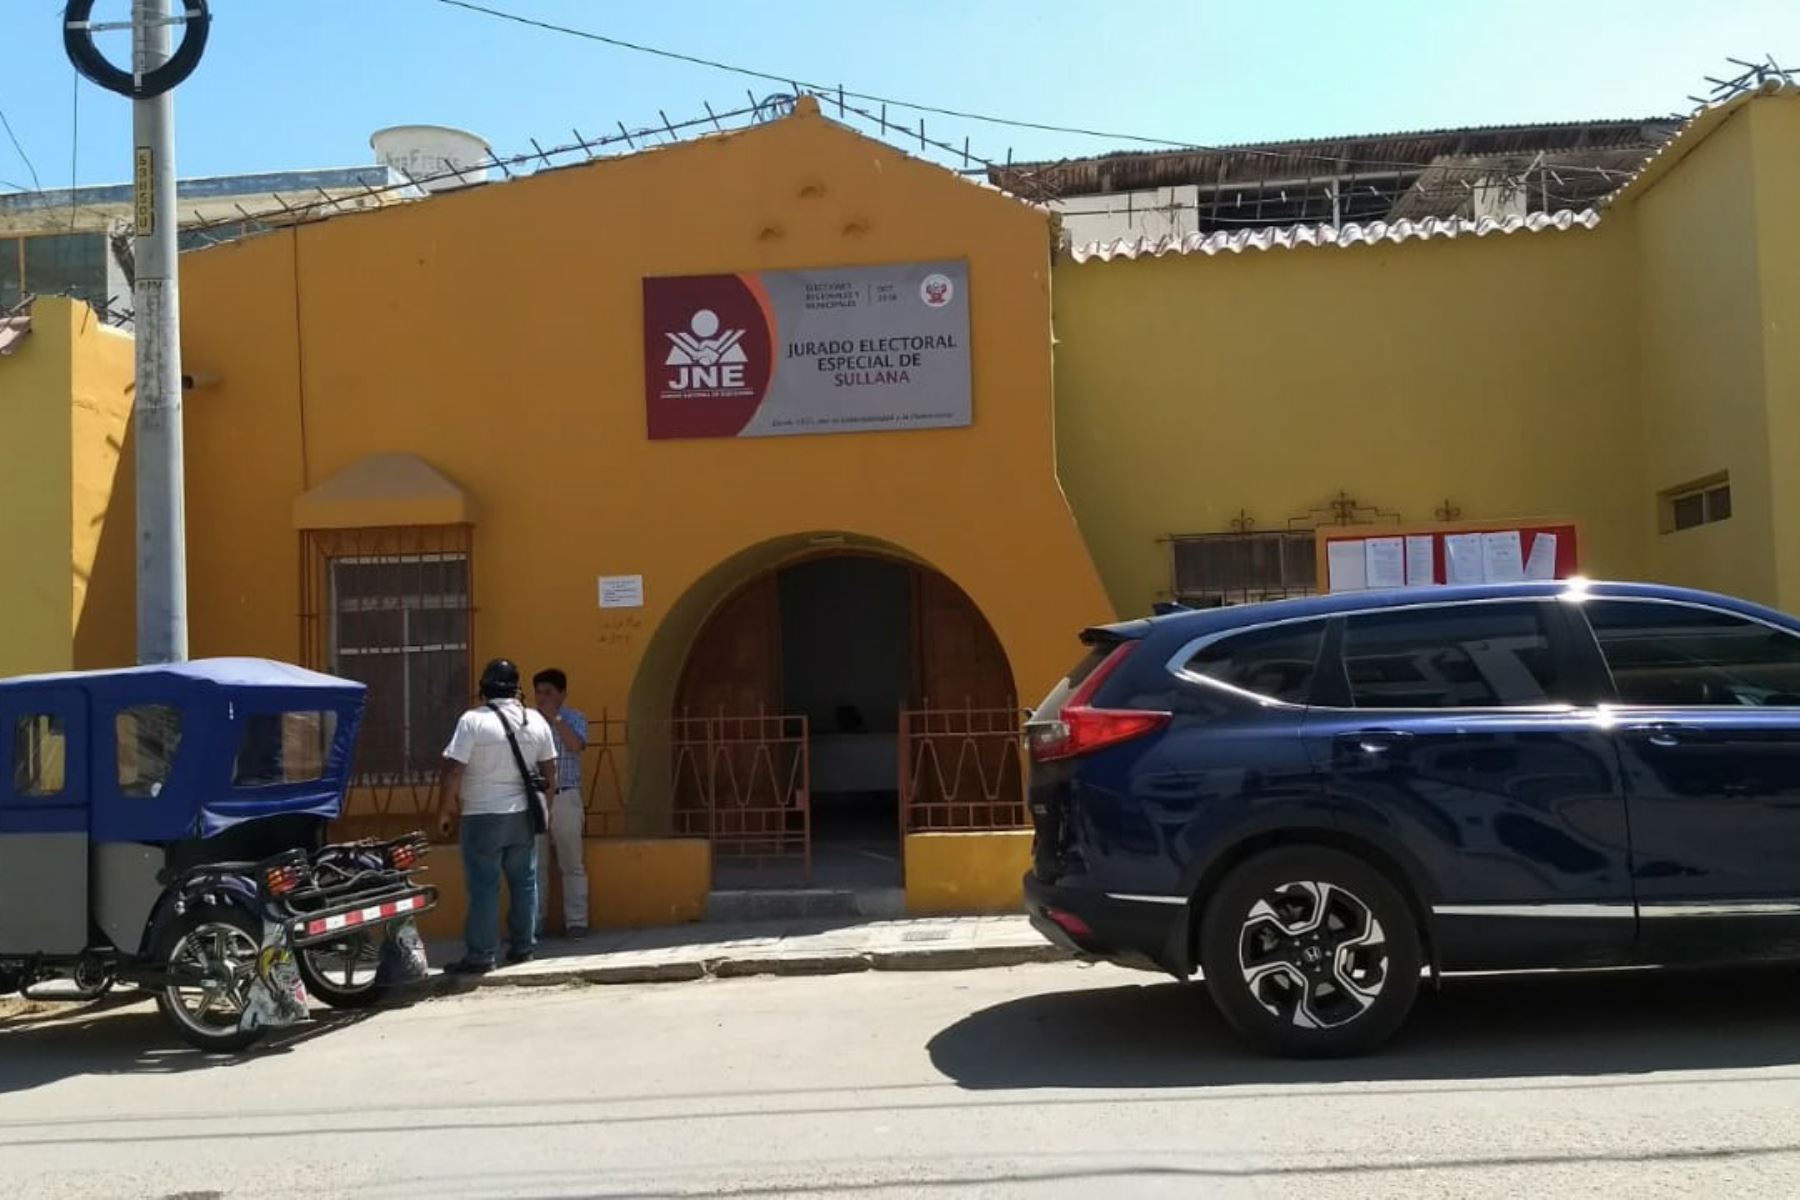 ANDINAJurado Electoral Especial de Sullana multó a dos excandidatos por infringir normas electorales en Ayabaca, en Piura. ANDINA